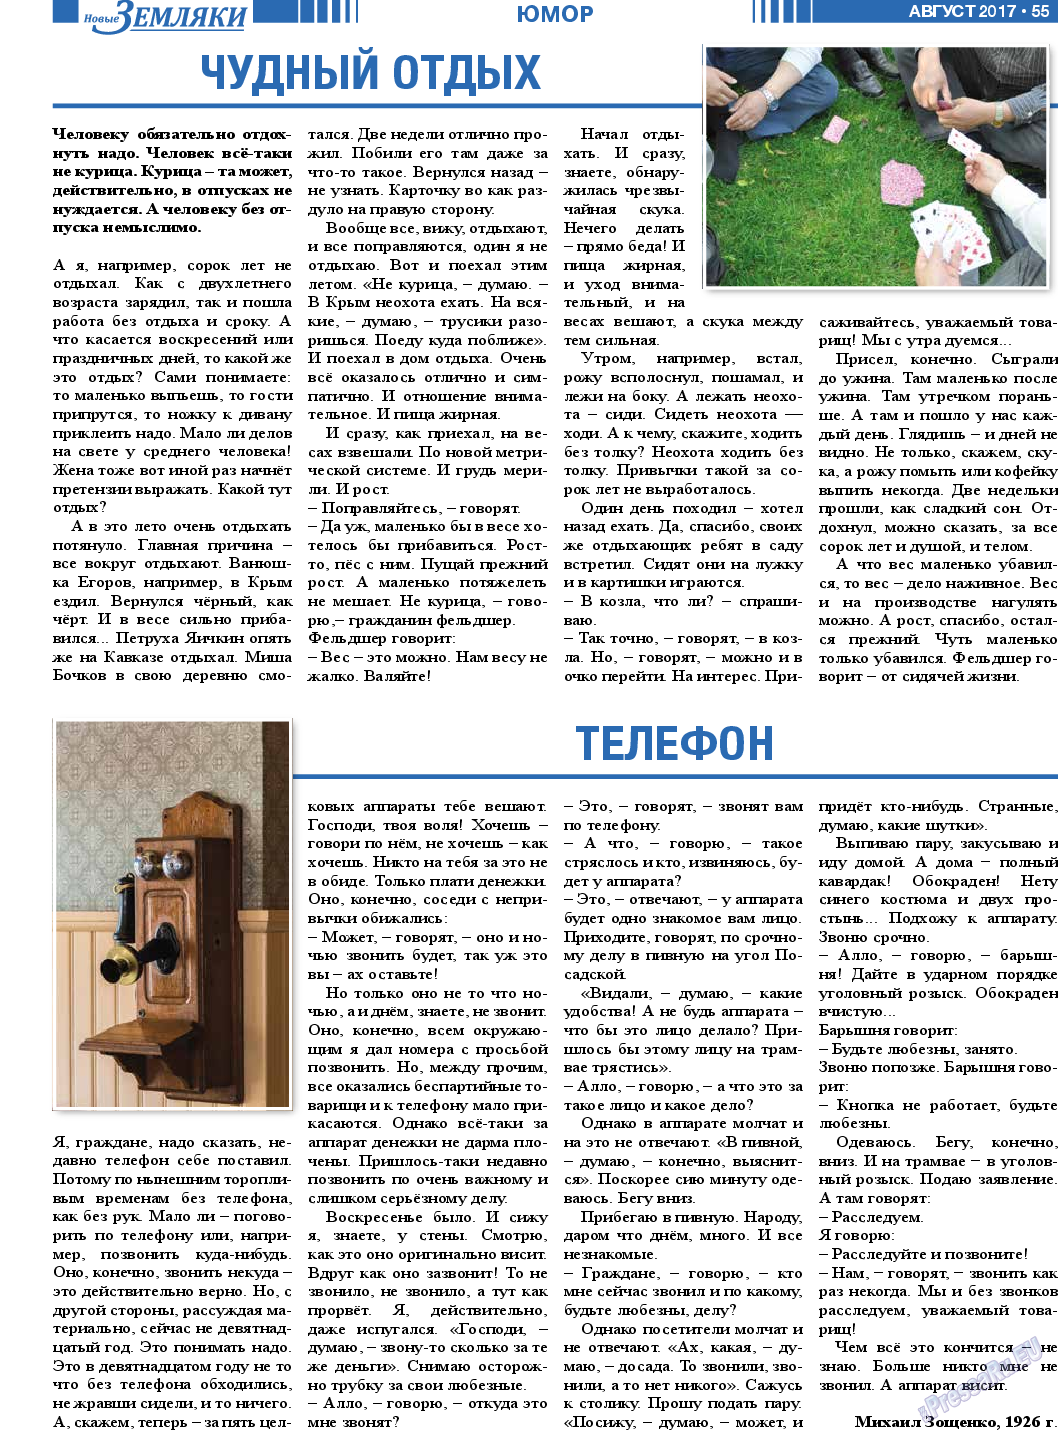 Новые Земляки, газета. 2017 №8 стр.55